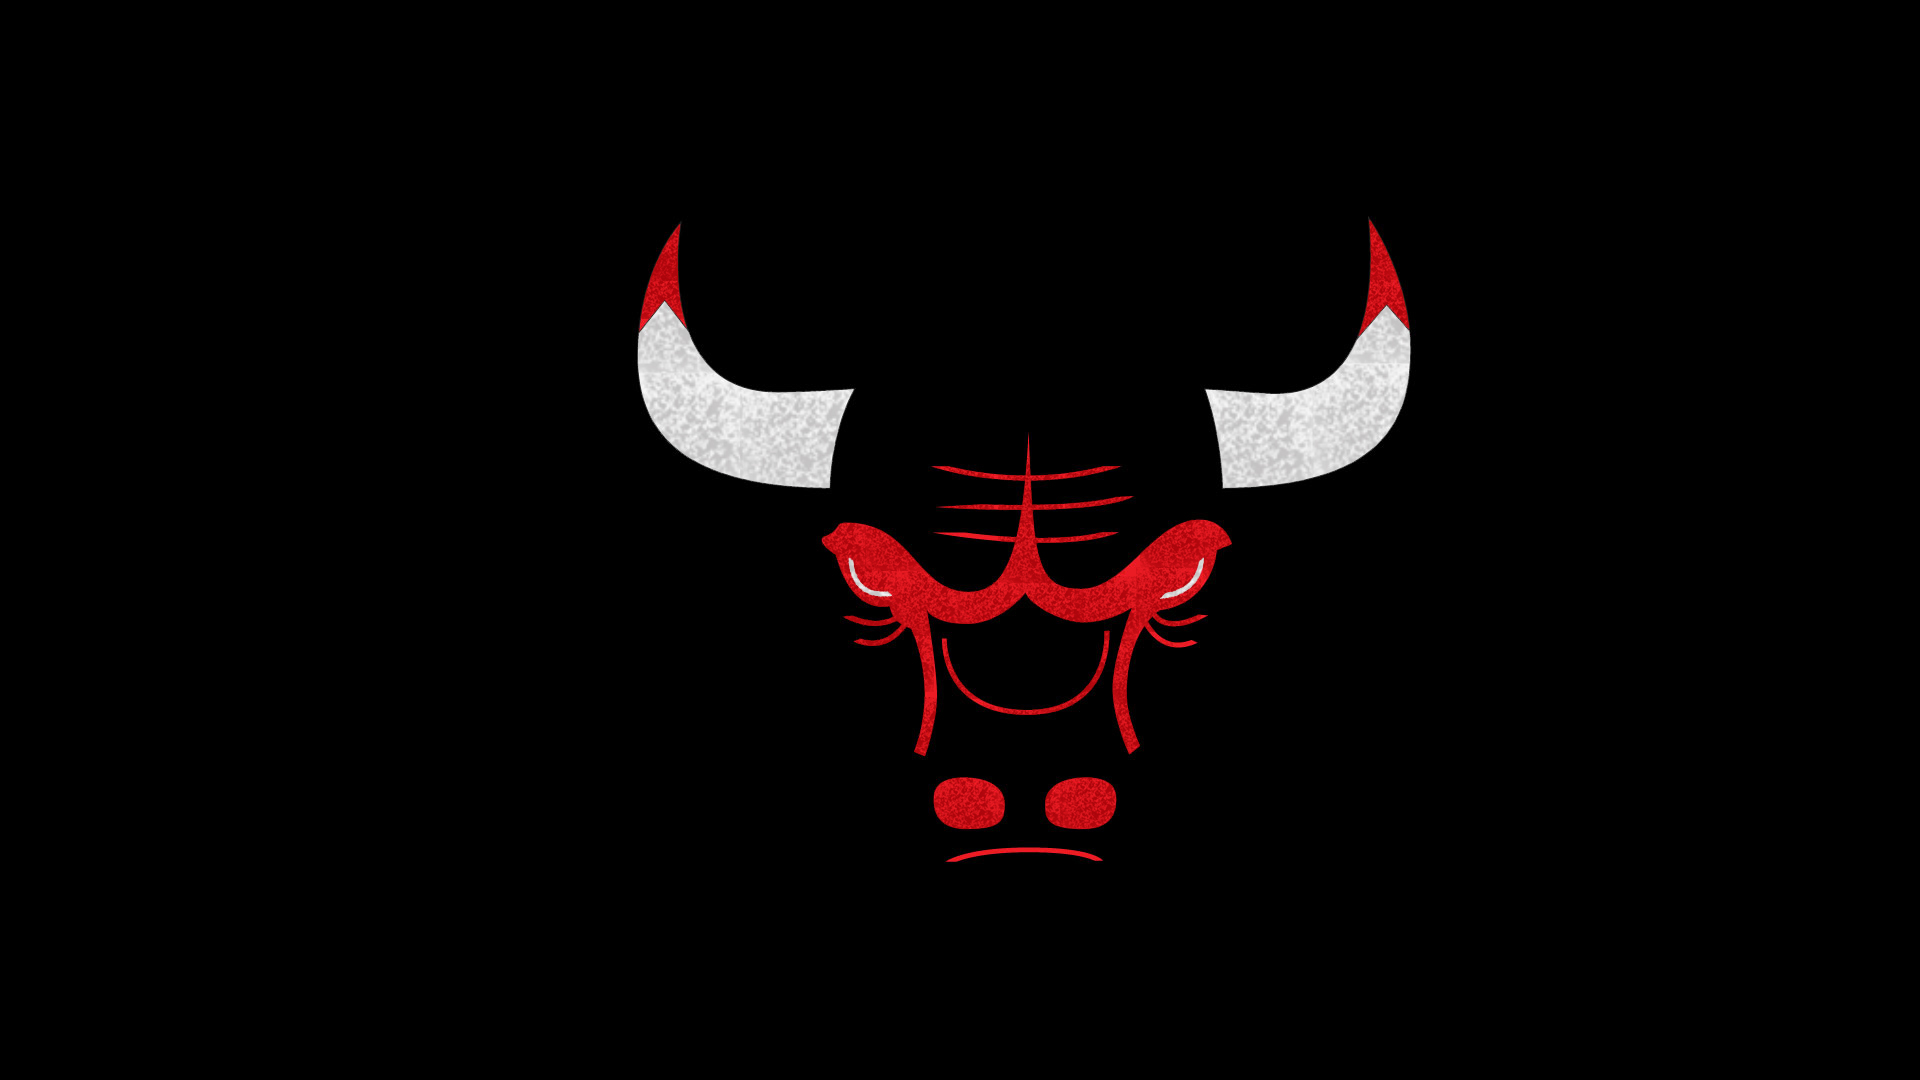 Chicago Bulls Logo Wallpaper HD - WallpaperSafari